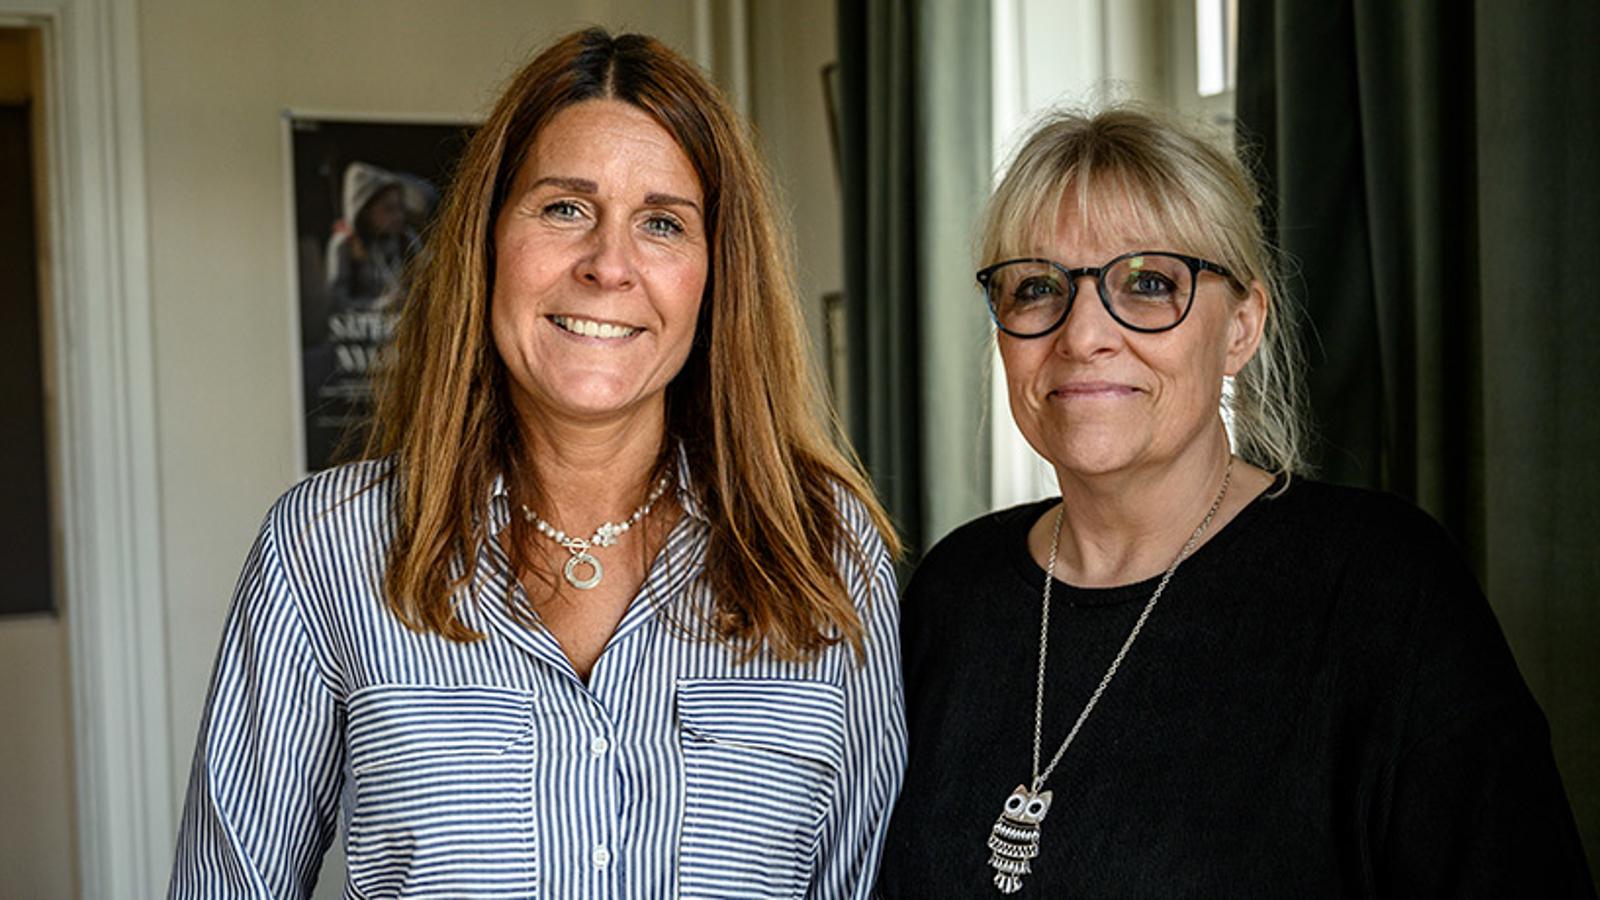 Till vänster, Carola Gårdare och till höger, Ingela Sagman. Carola och Ingela är verksamhetschefer för Frälsningsarméns missbruksarbete i Göteborg. De tittar in i kameran och ler.